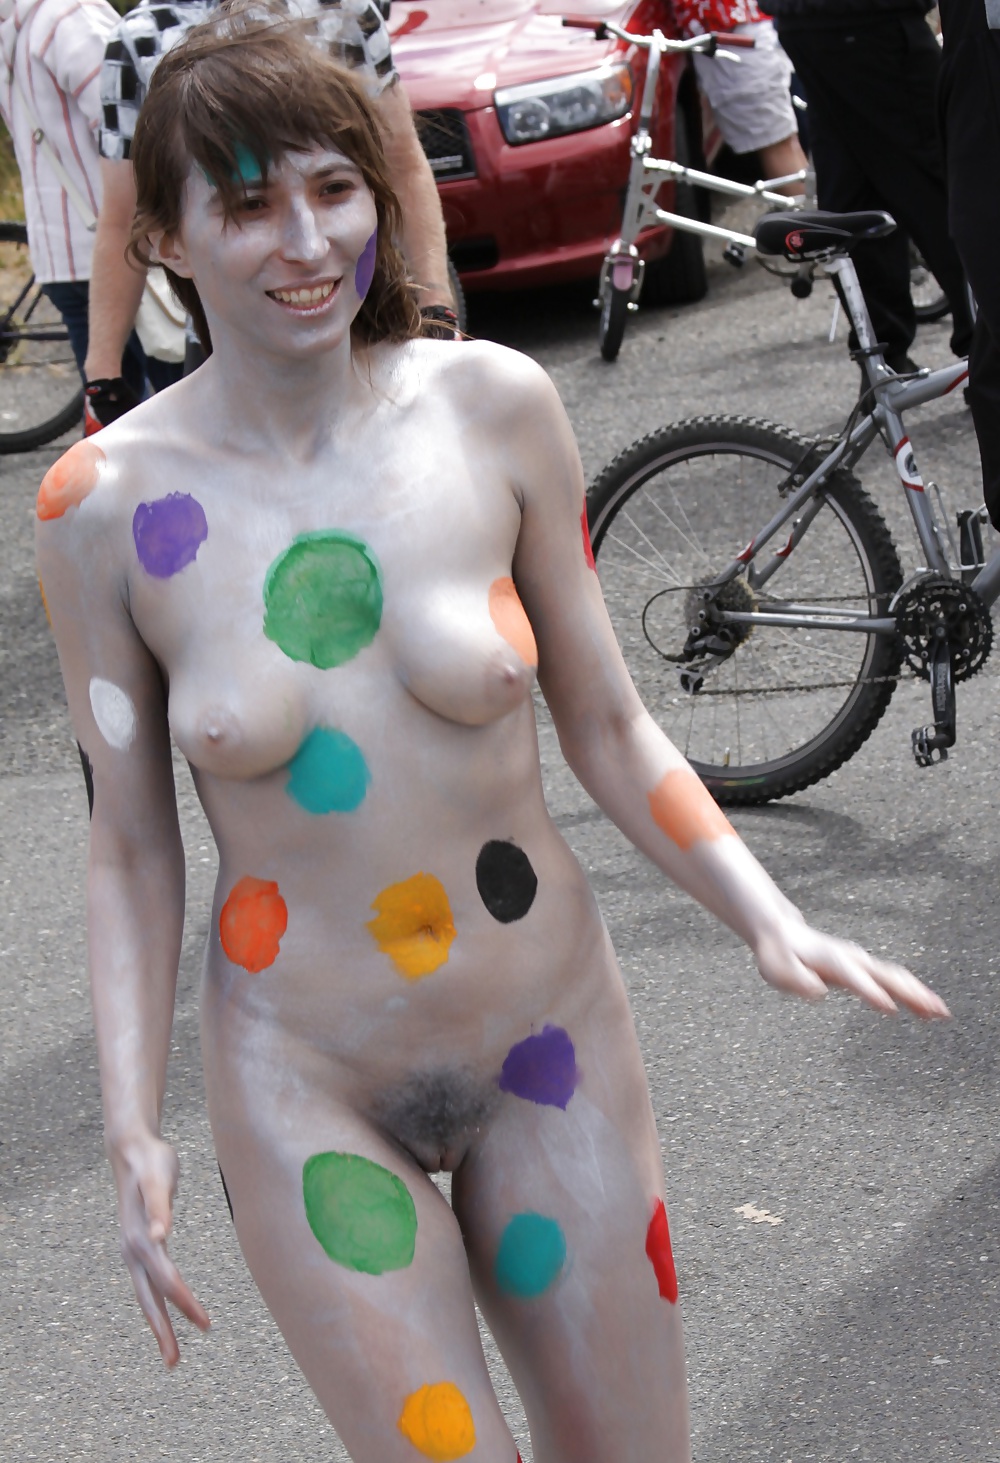 Sex Nude public fun 2011-2014 image